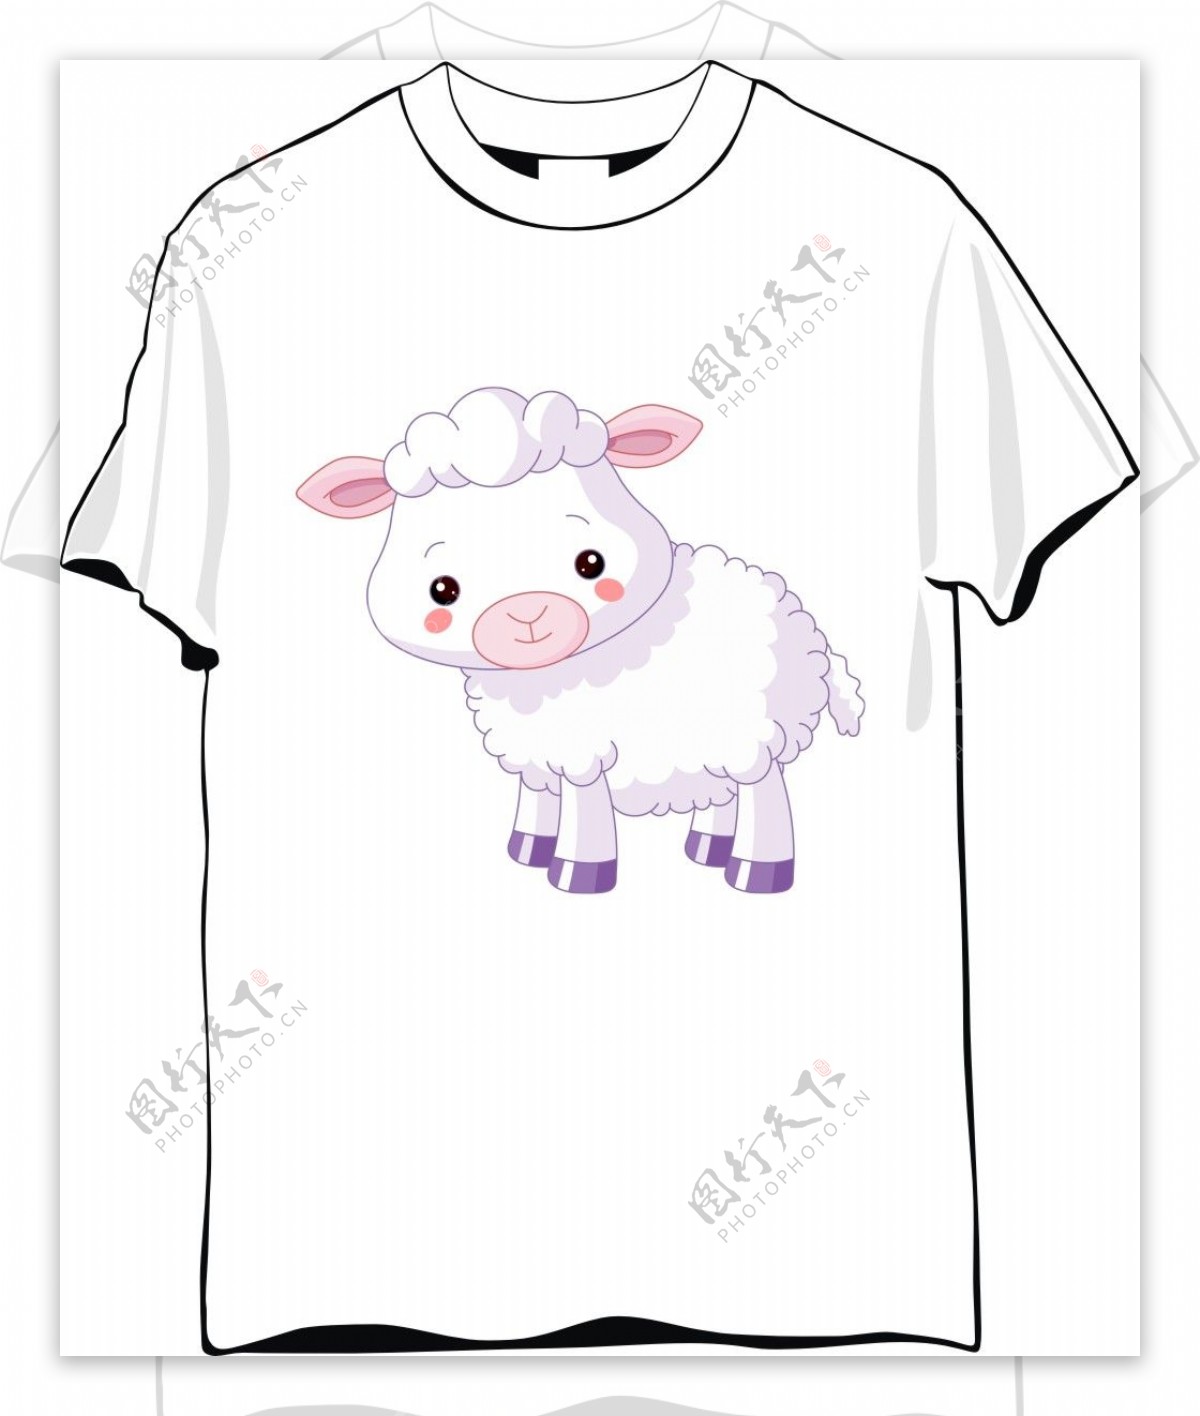 小羊可爱T恤